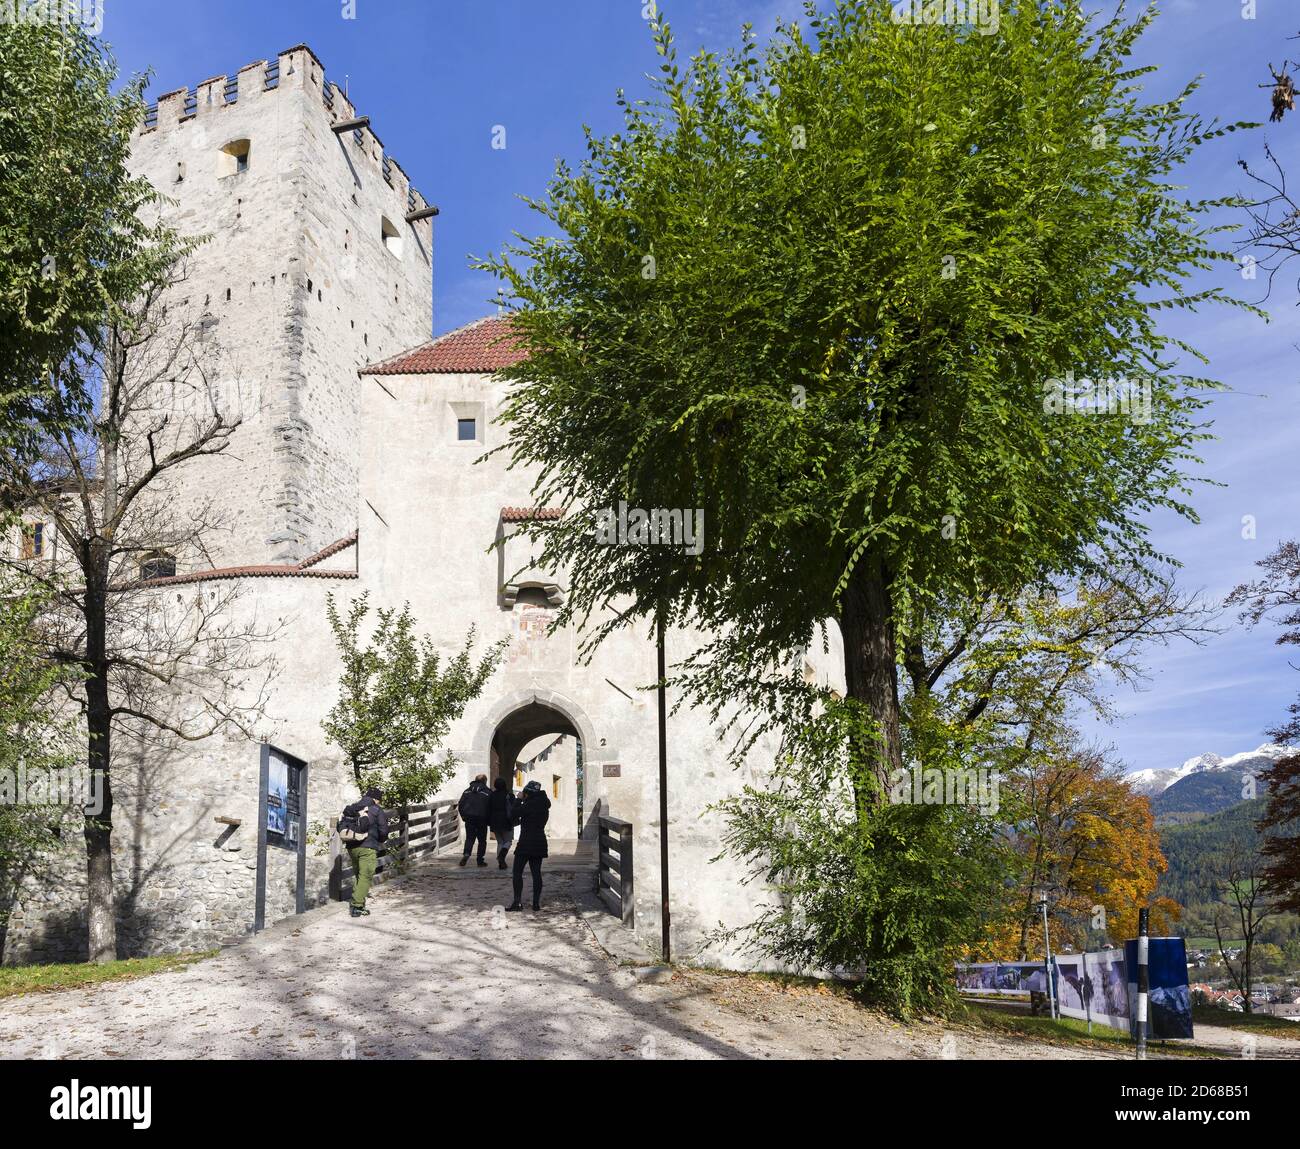 Château de Bruneck, aujourd'hui Musée de montagne de Messner Ripa, Bruneck, Brunico dans la vallée de Puster, Tyrol du Sud, Alto Adige. europe, Europe centrale, italie Banque D'Images